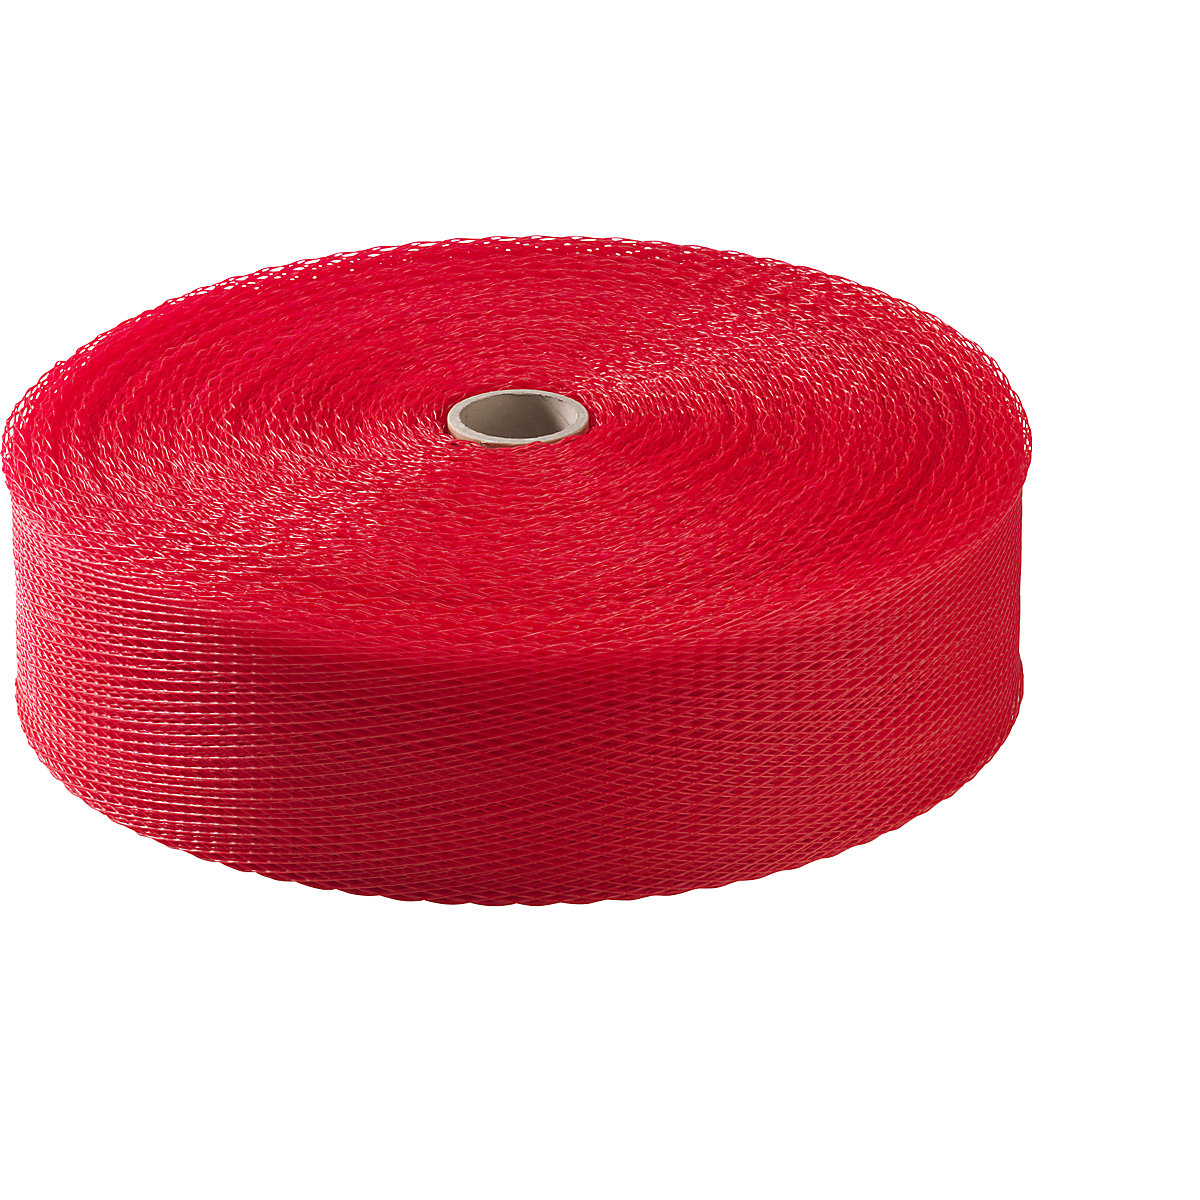 Materiaalbeschermingsnet, polyethyleen, 1 rol, rood, voor Ø 200 – 250 mm-9